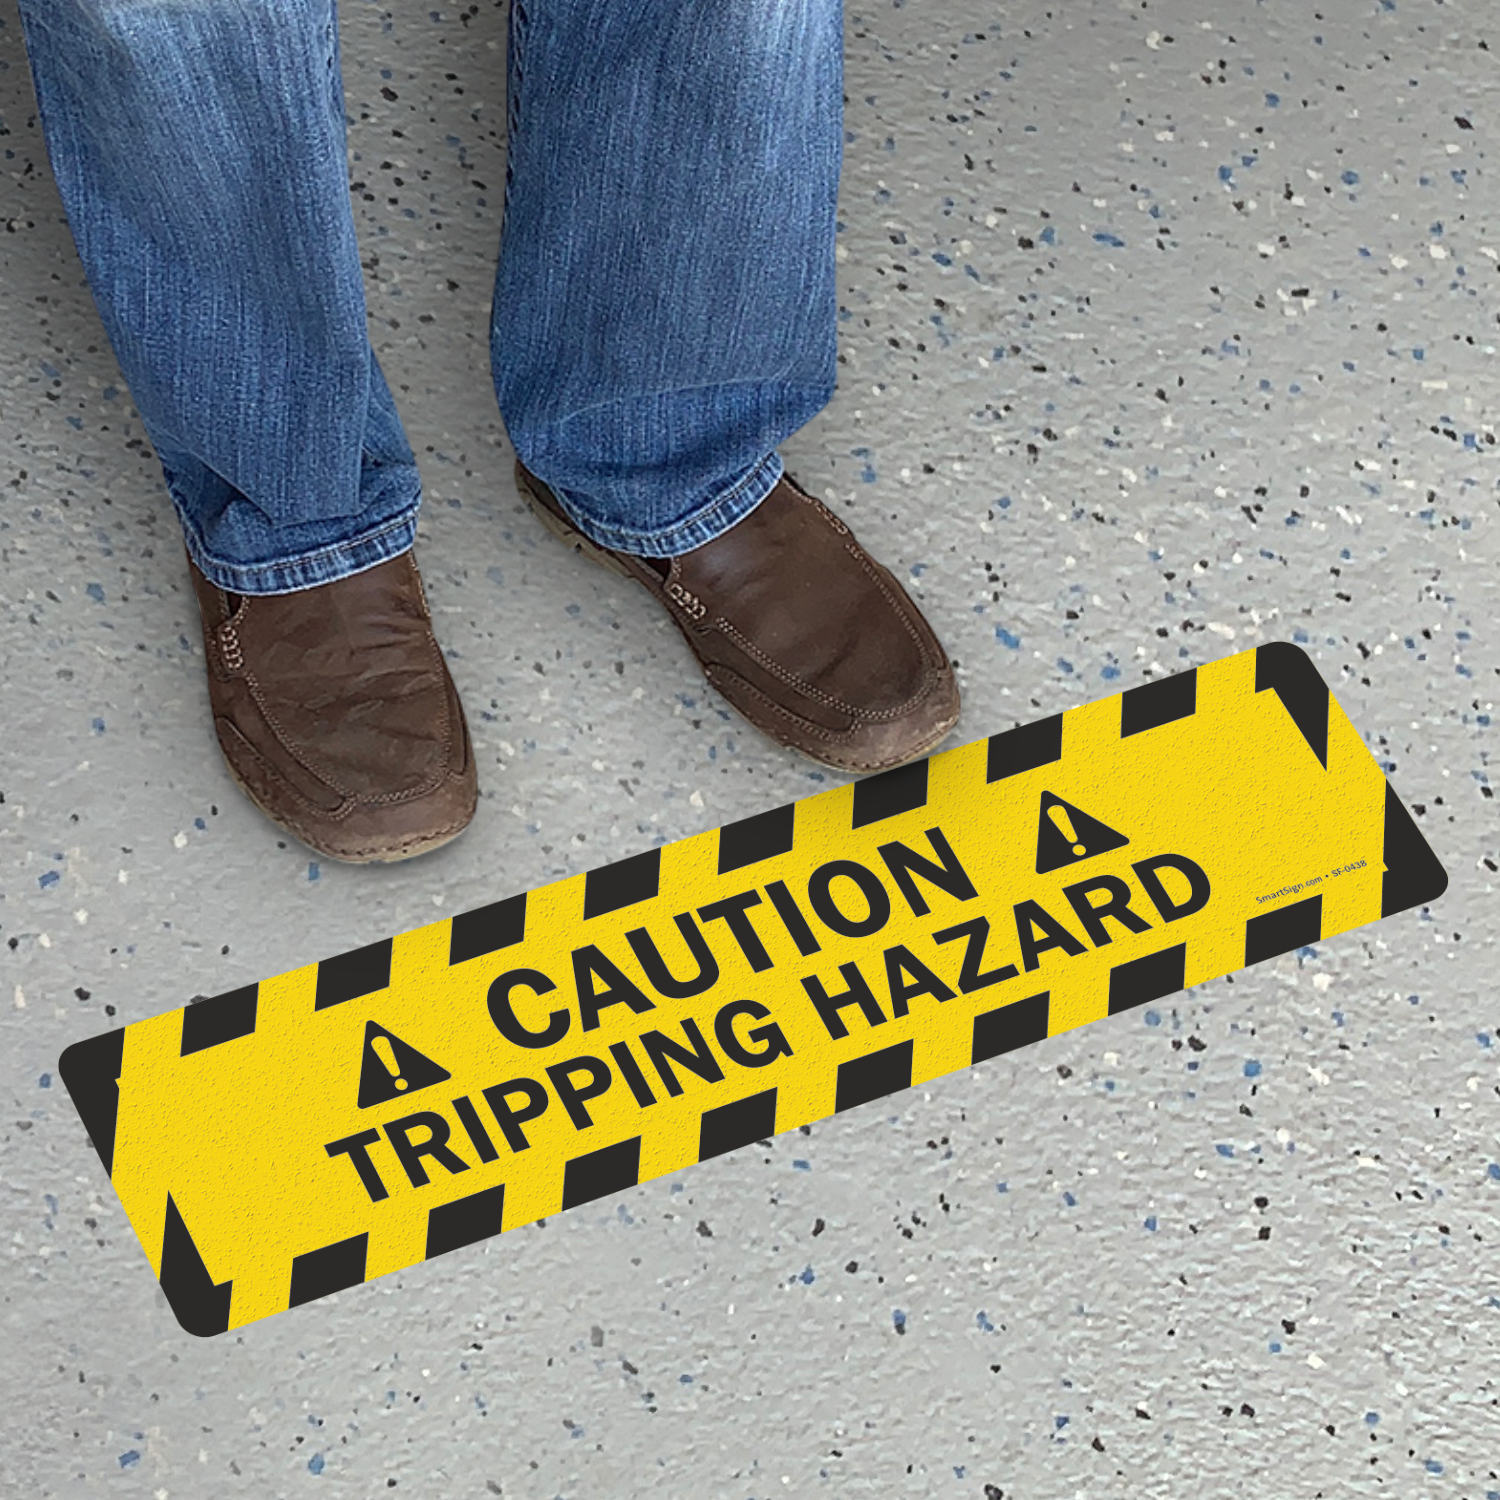 slip trip hazard signage